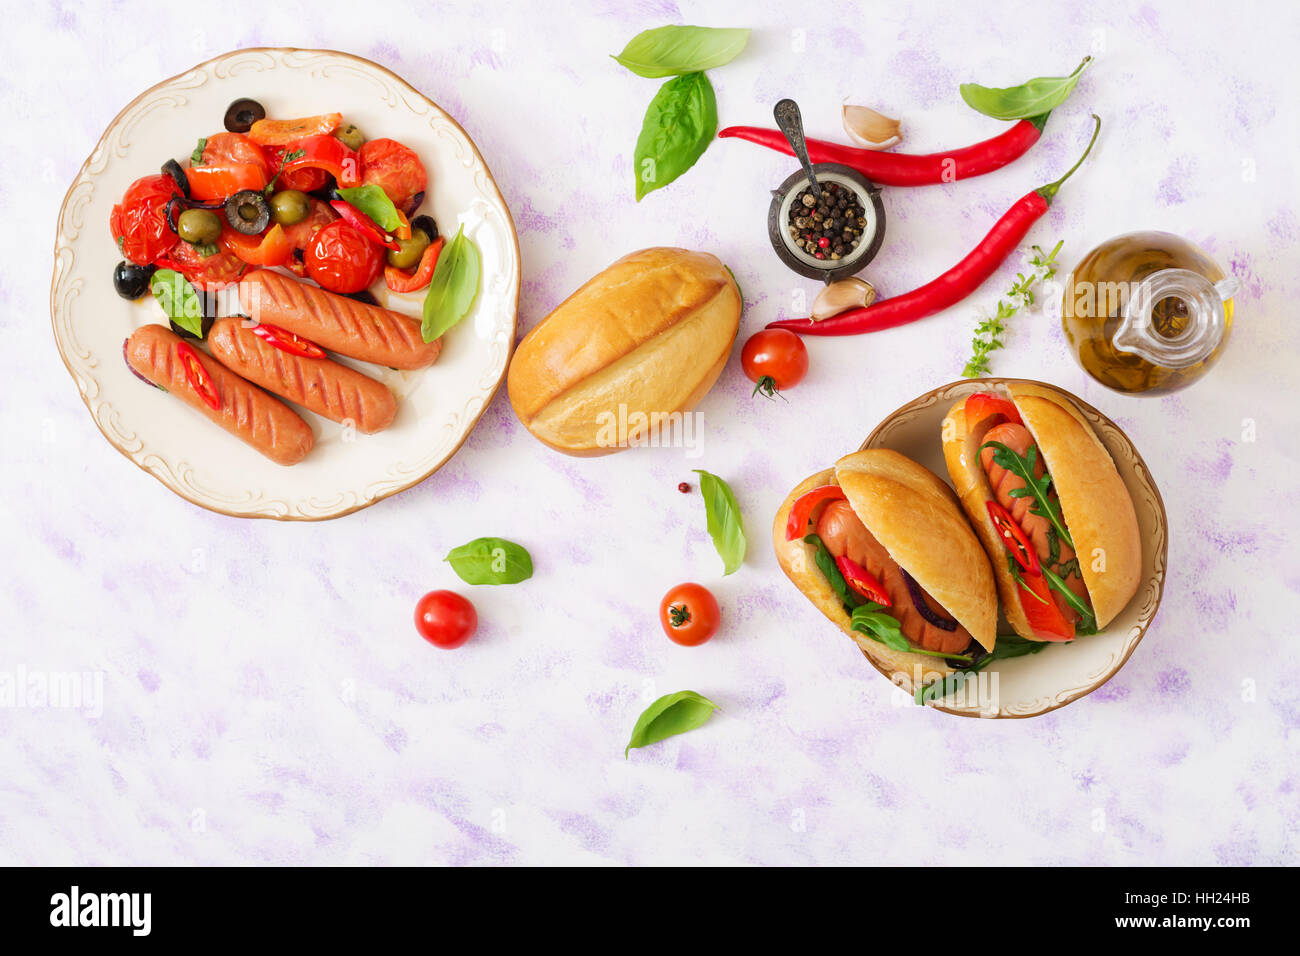 Hot-dog avec des saucisses et des légumes dans le style grec. Mise à plat. Vue d'en haut Banque D'Images